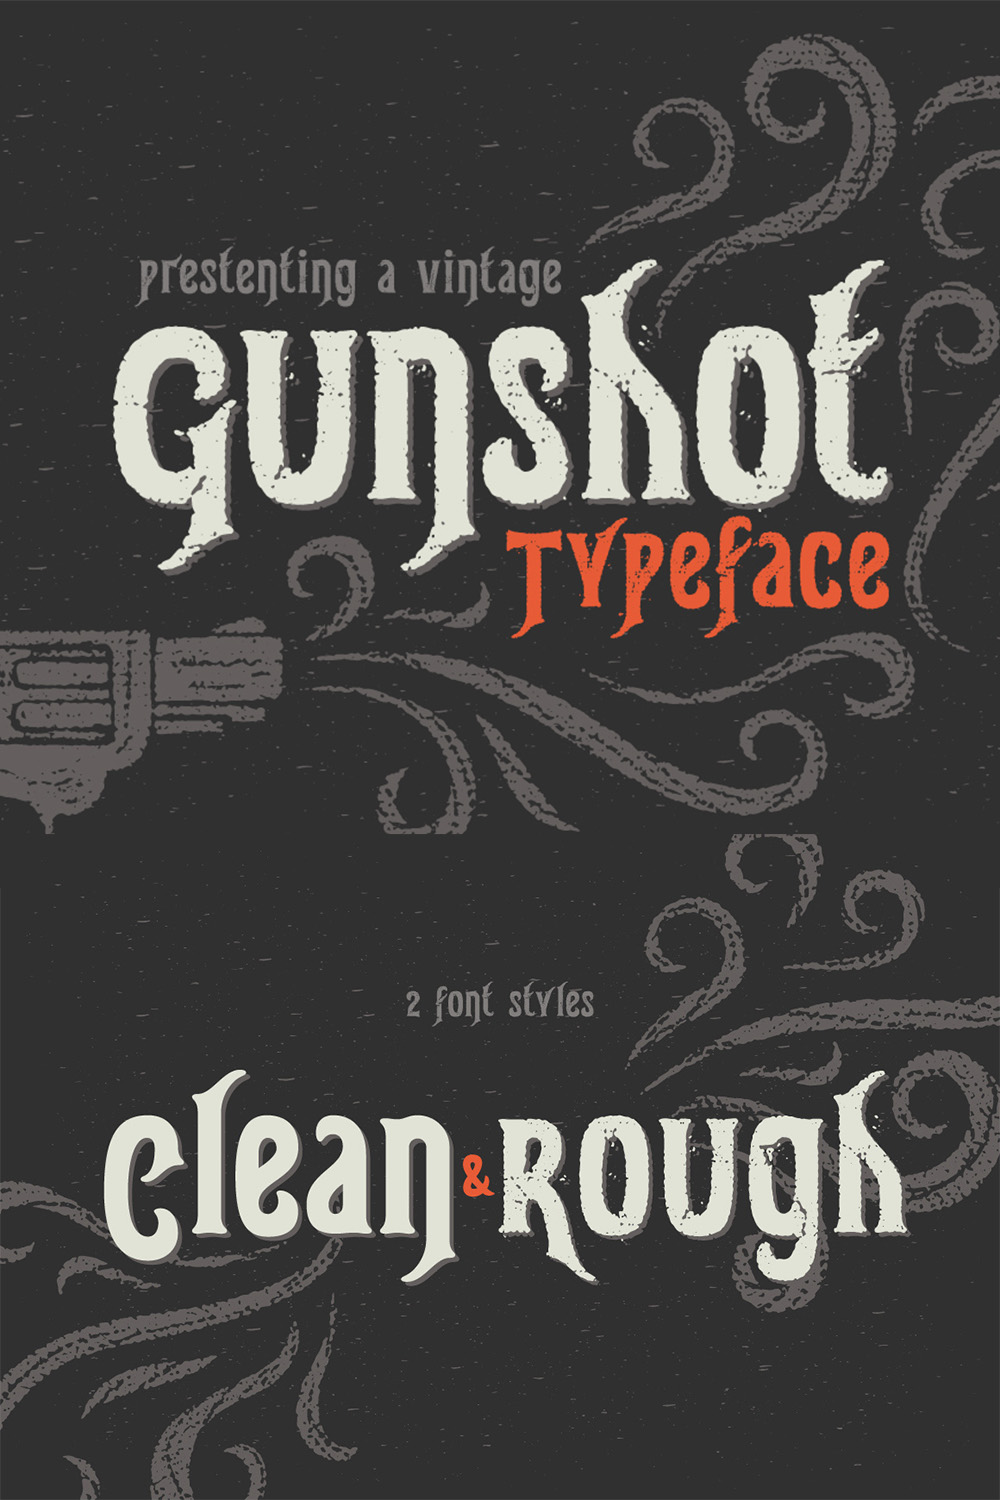 Gunshot Typeface Pinterest Collage image.